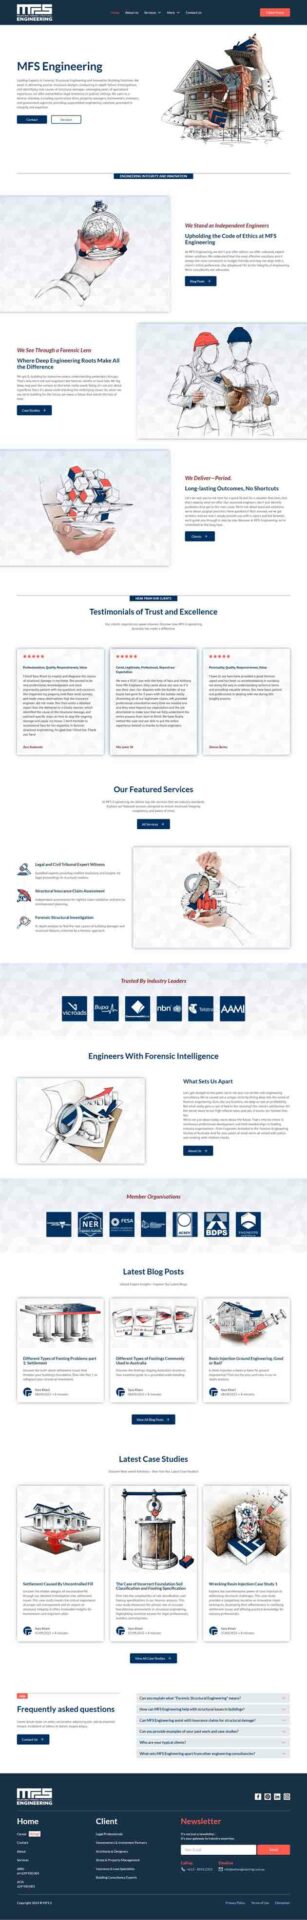 طراحی و اجرای وبسایت شرکت عمرانی توسط آژانس دیجیتال مارکتینگ باروکا